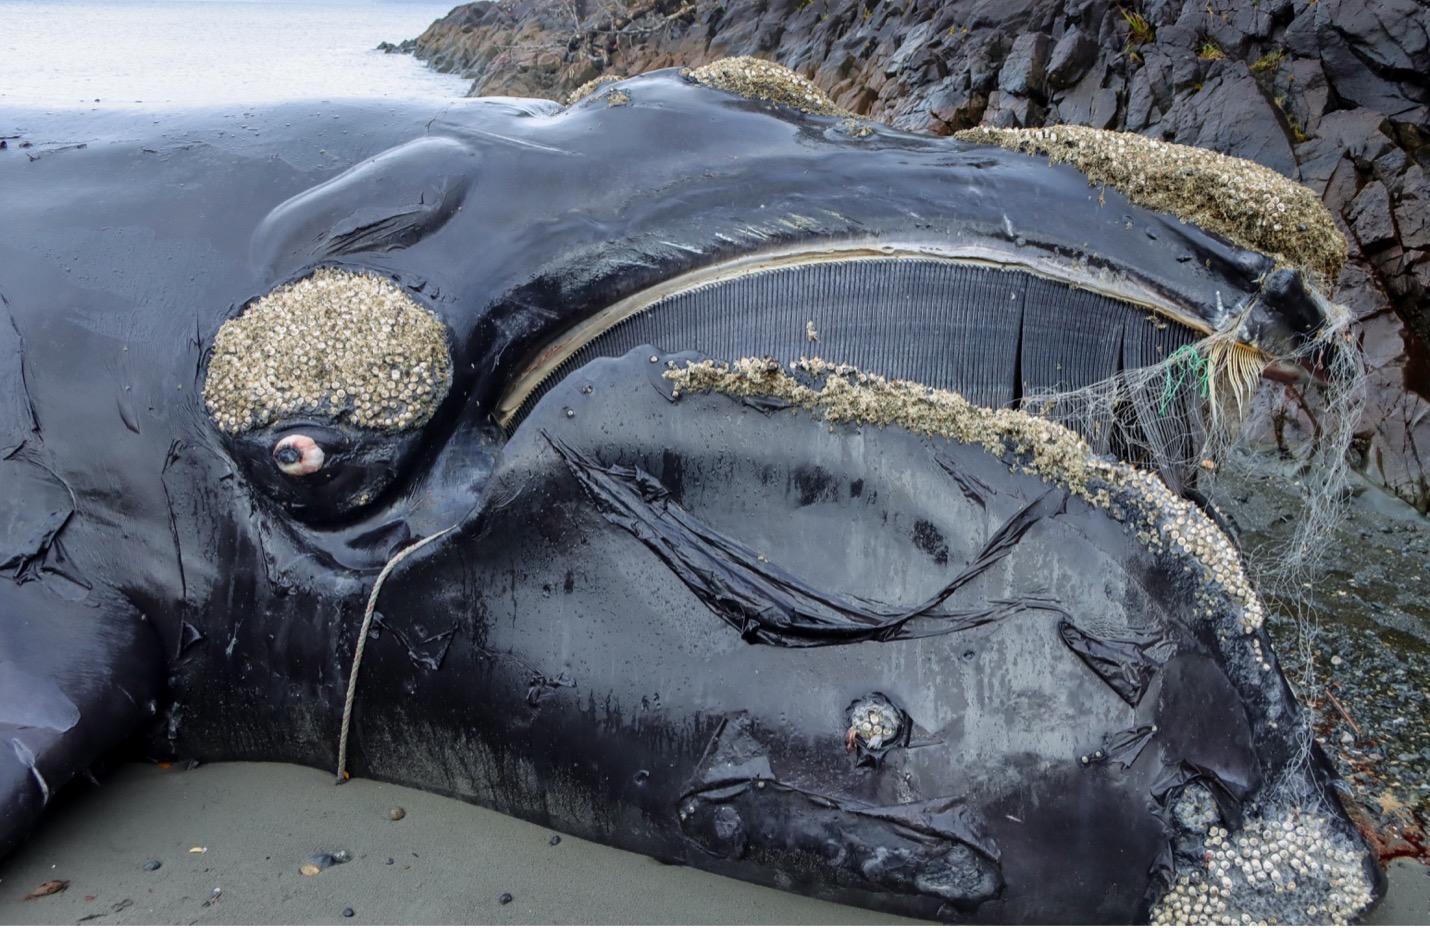 El enmallamiento en redes de pesca y las colisiones con embarcaciones, son las principales amenazas para la conservación de las ballenas a nivel global. Chile no es la excepción. Foto: B. Galletti/Centro de Conservación Cetacea